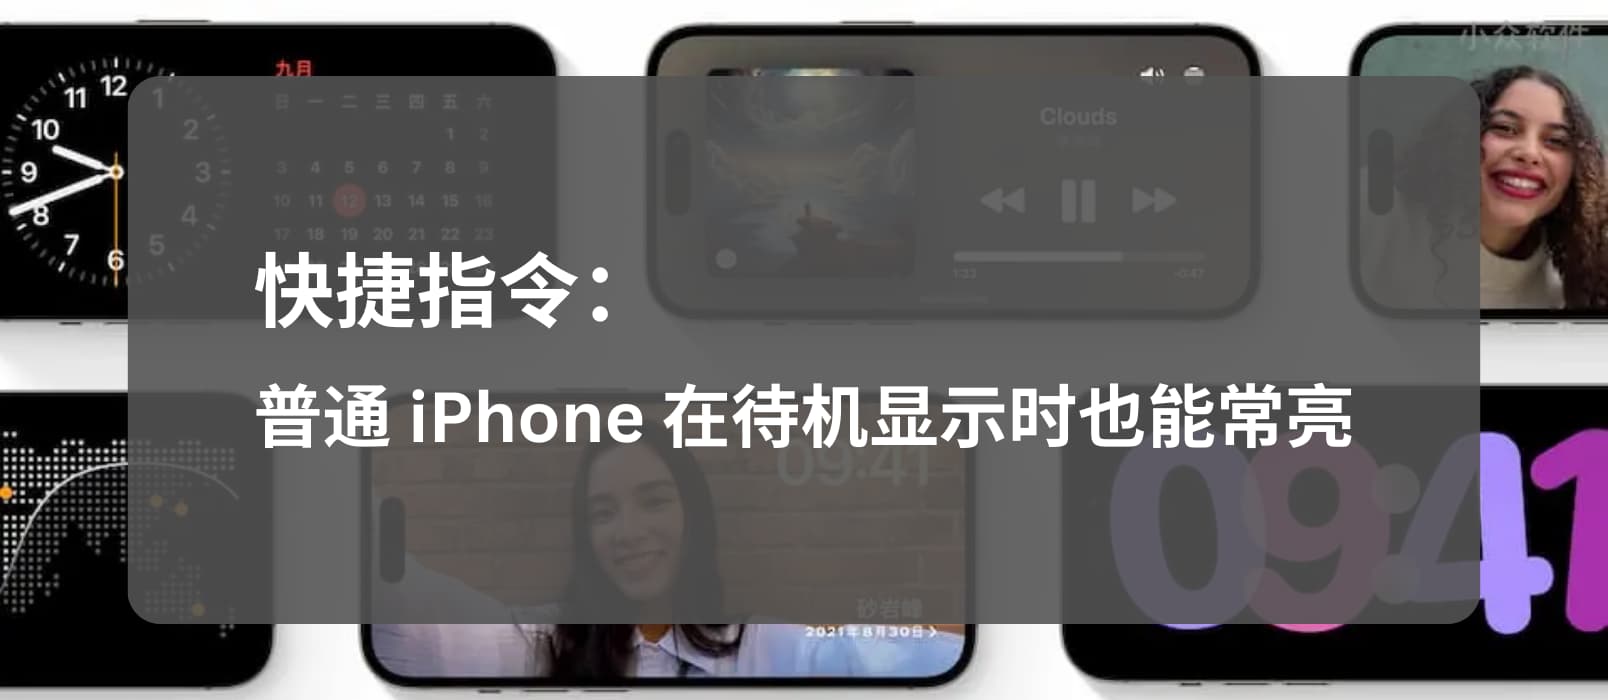 让 iOS 17 「待机显示」适配普通 iPhone（非 Pro/Max），屏幕在充电时常亮